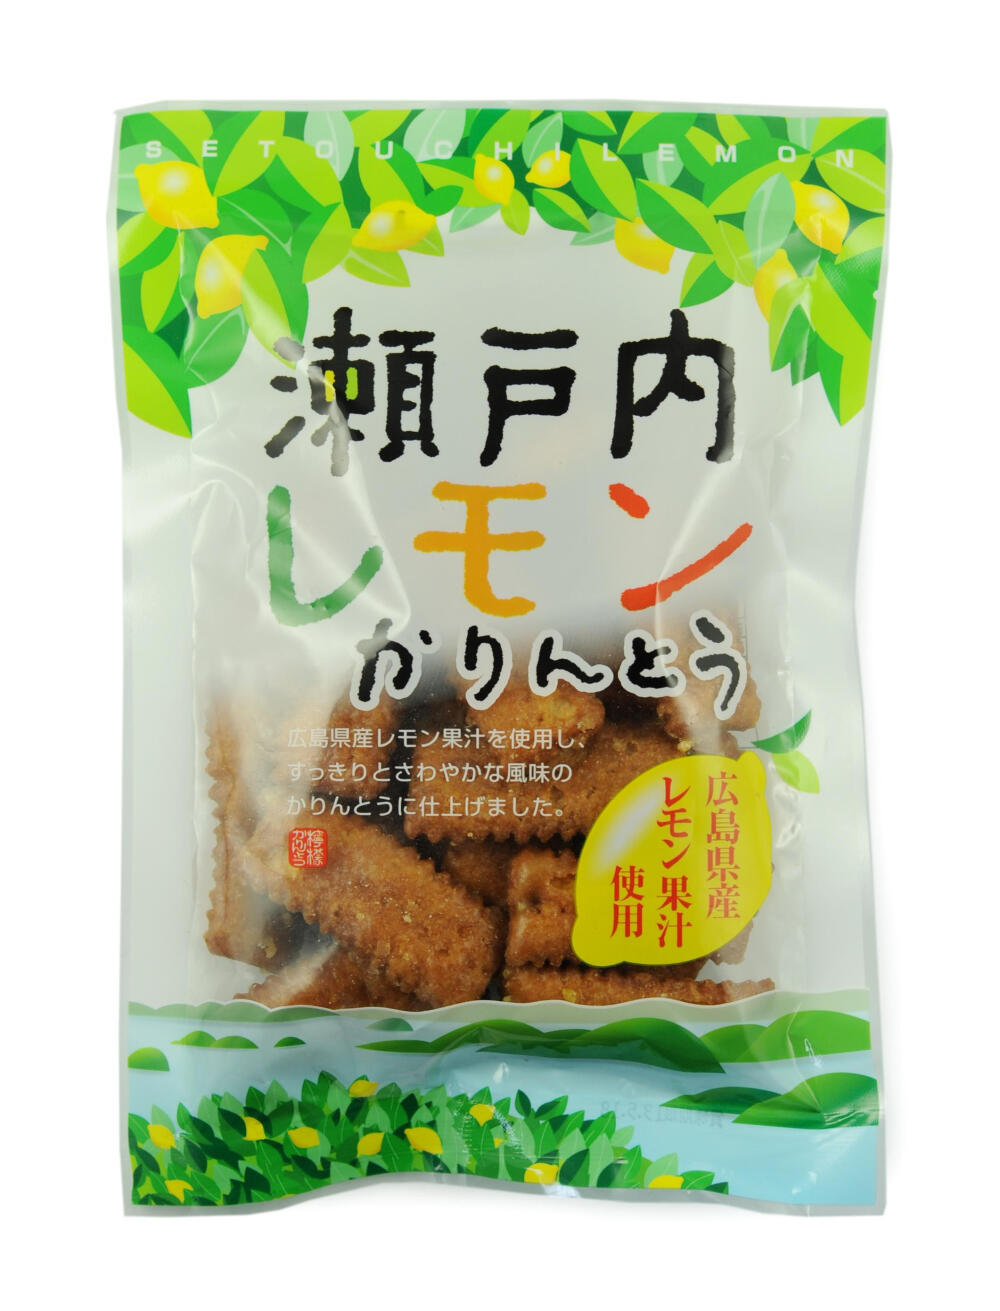 日本原装进口零食品 宫本 柠檬味巧果脆饼 120g